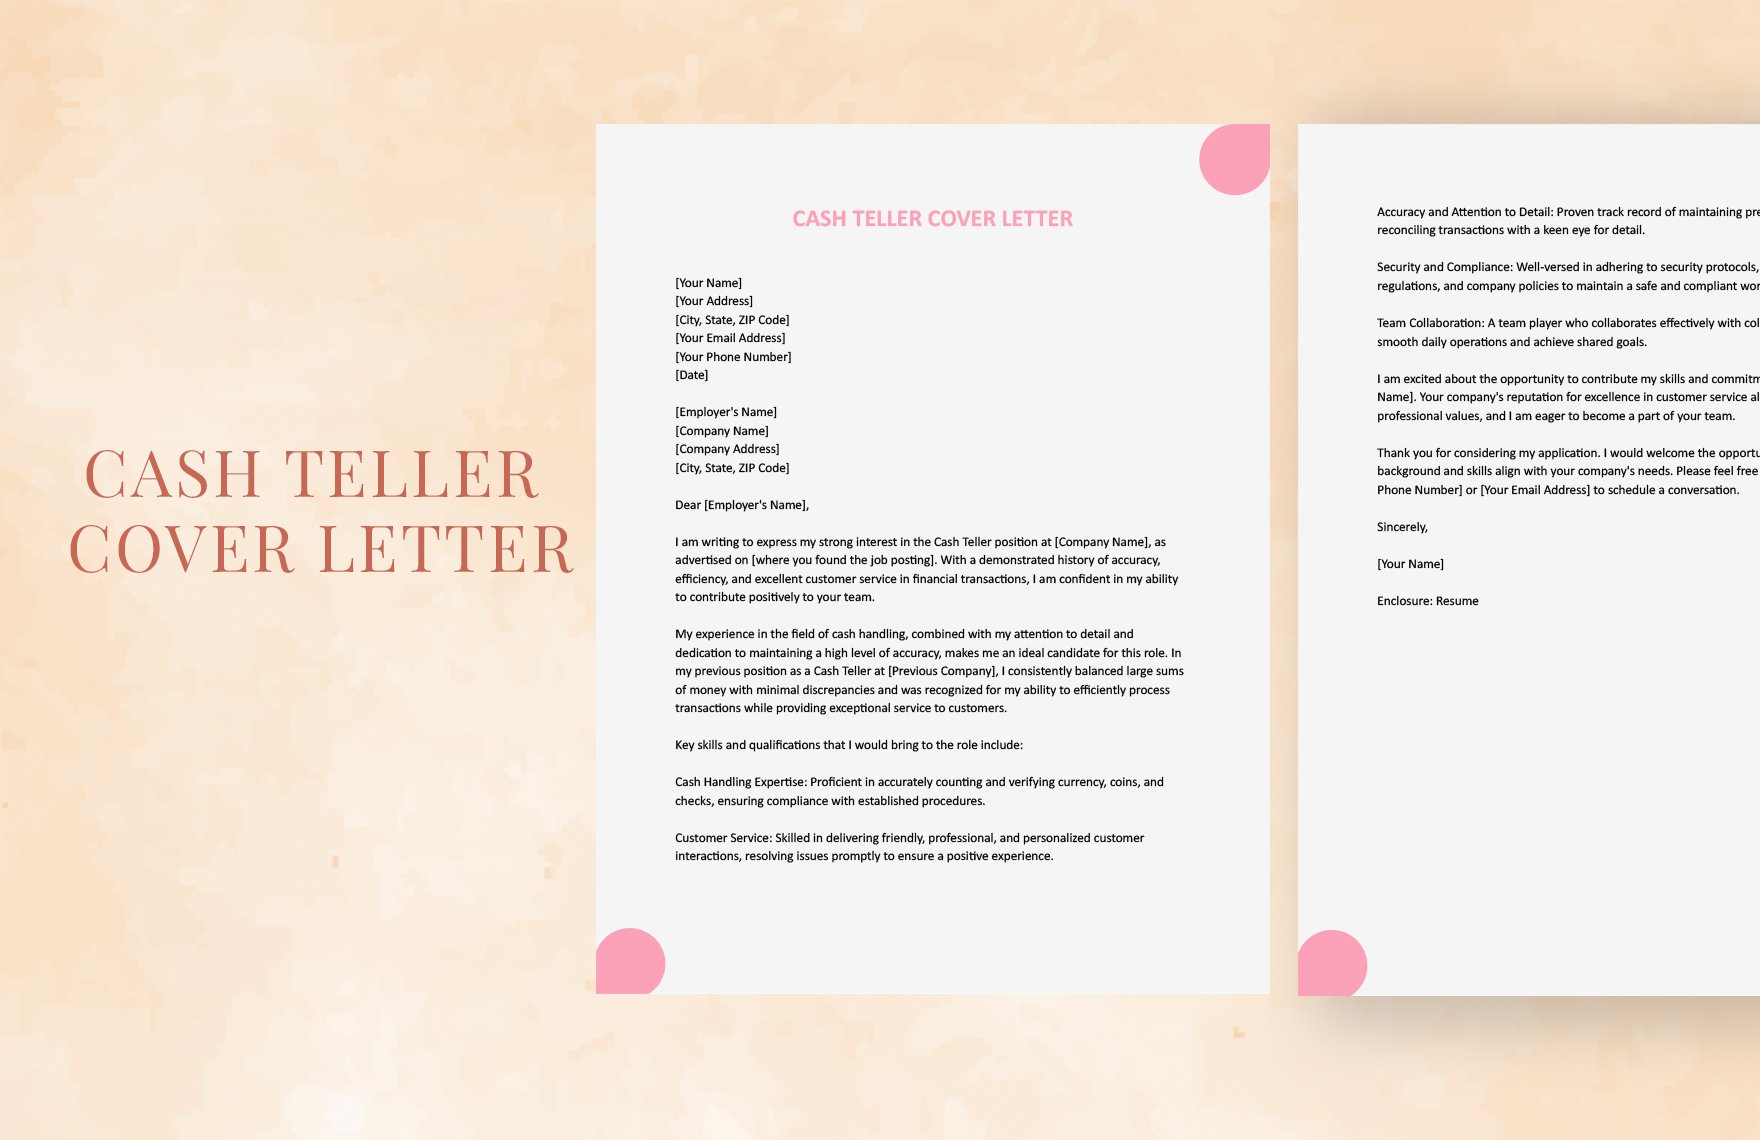 Cash Teller Cover Letter